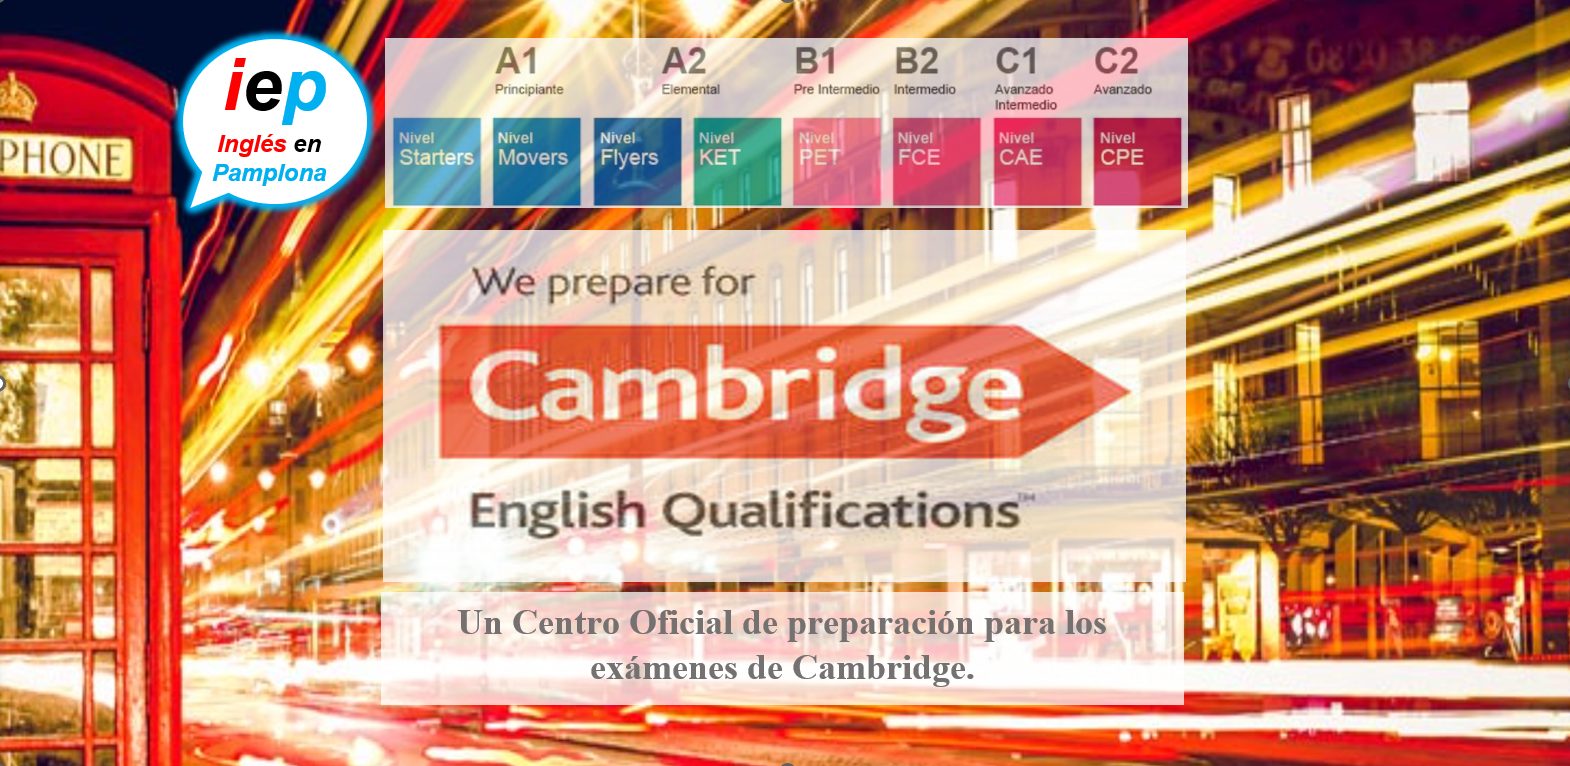 Inglés en Pamplona preparación para los exámenes de Cambridge